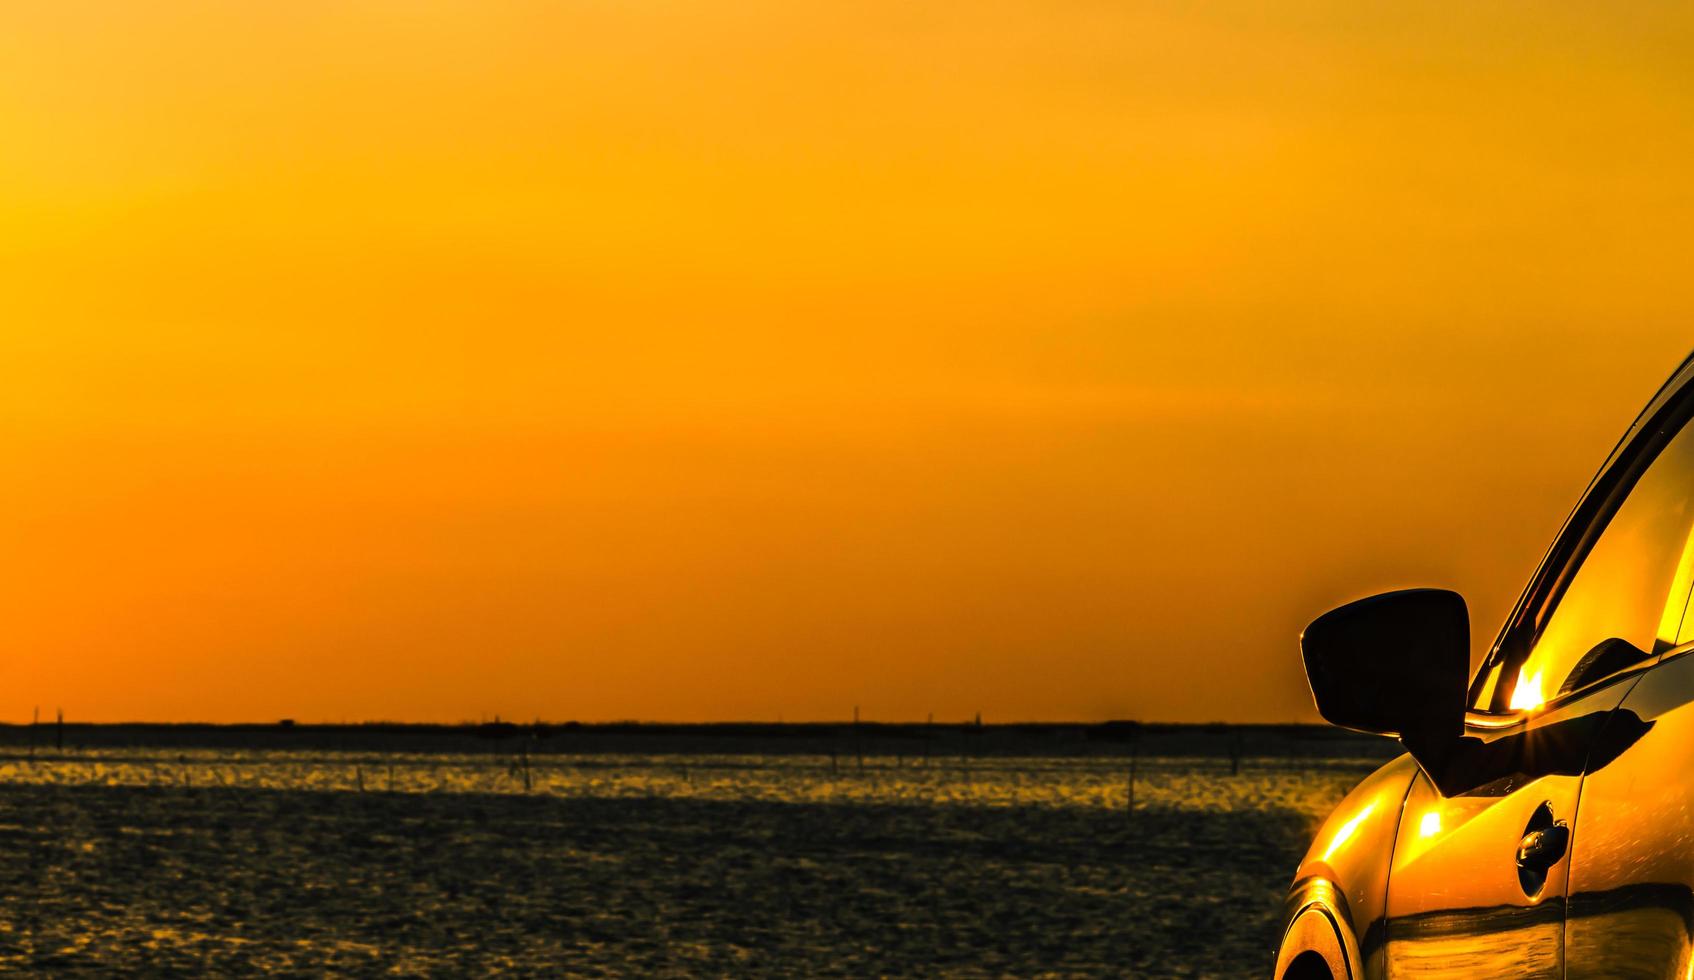 blauwe compacte suv-auto met sport en modern design geparkeerd op betonnen weg aan zee bij zonsondergang met oranje lucht. milieuvriendelijke technologie. zakelijk succesconcept. foto